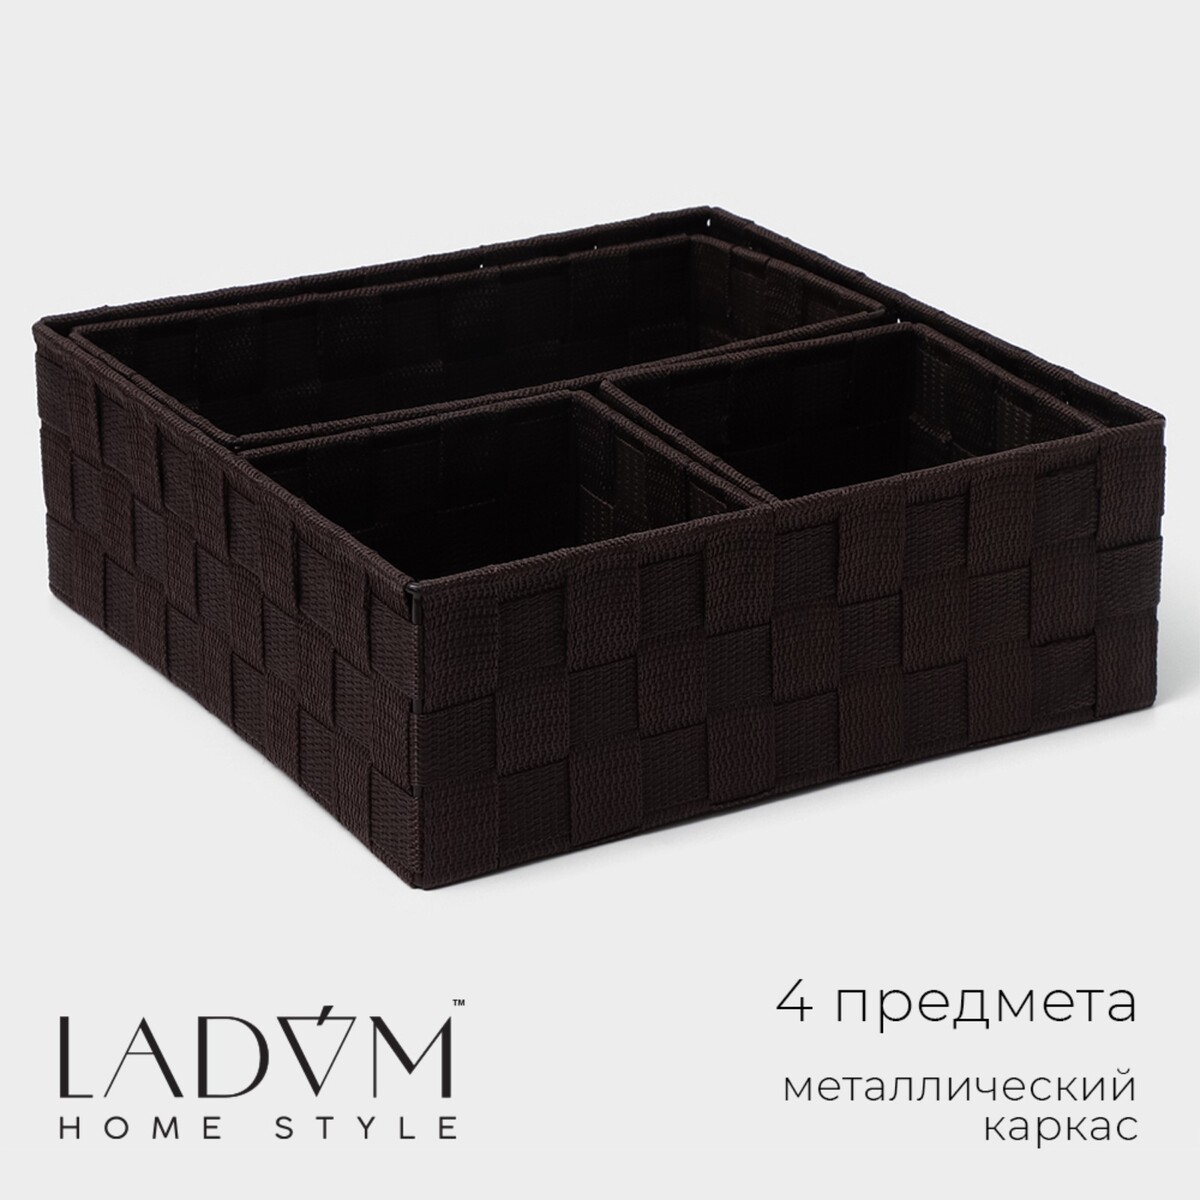 Набор корзин для хранения ladо́m, ручное плетение, 4 шт: от 13×13×9 см до 28×28×10 см, цвет коричневый